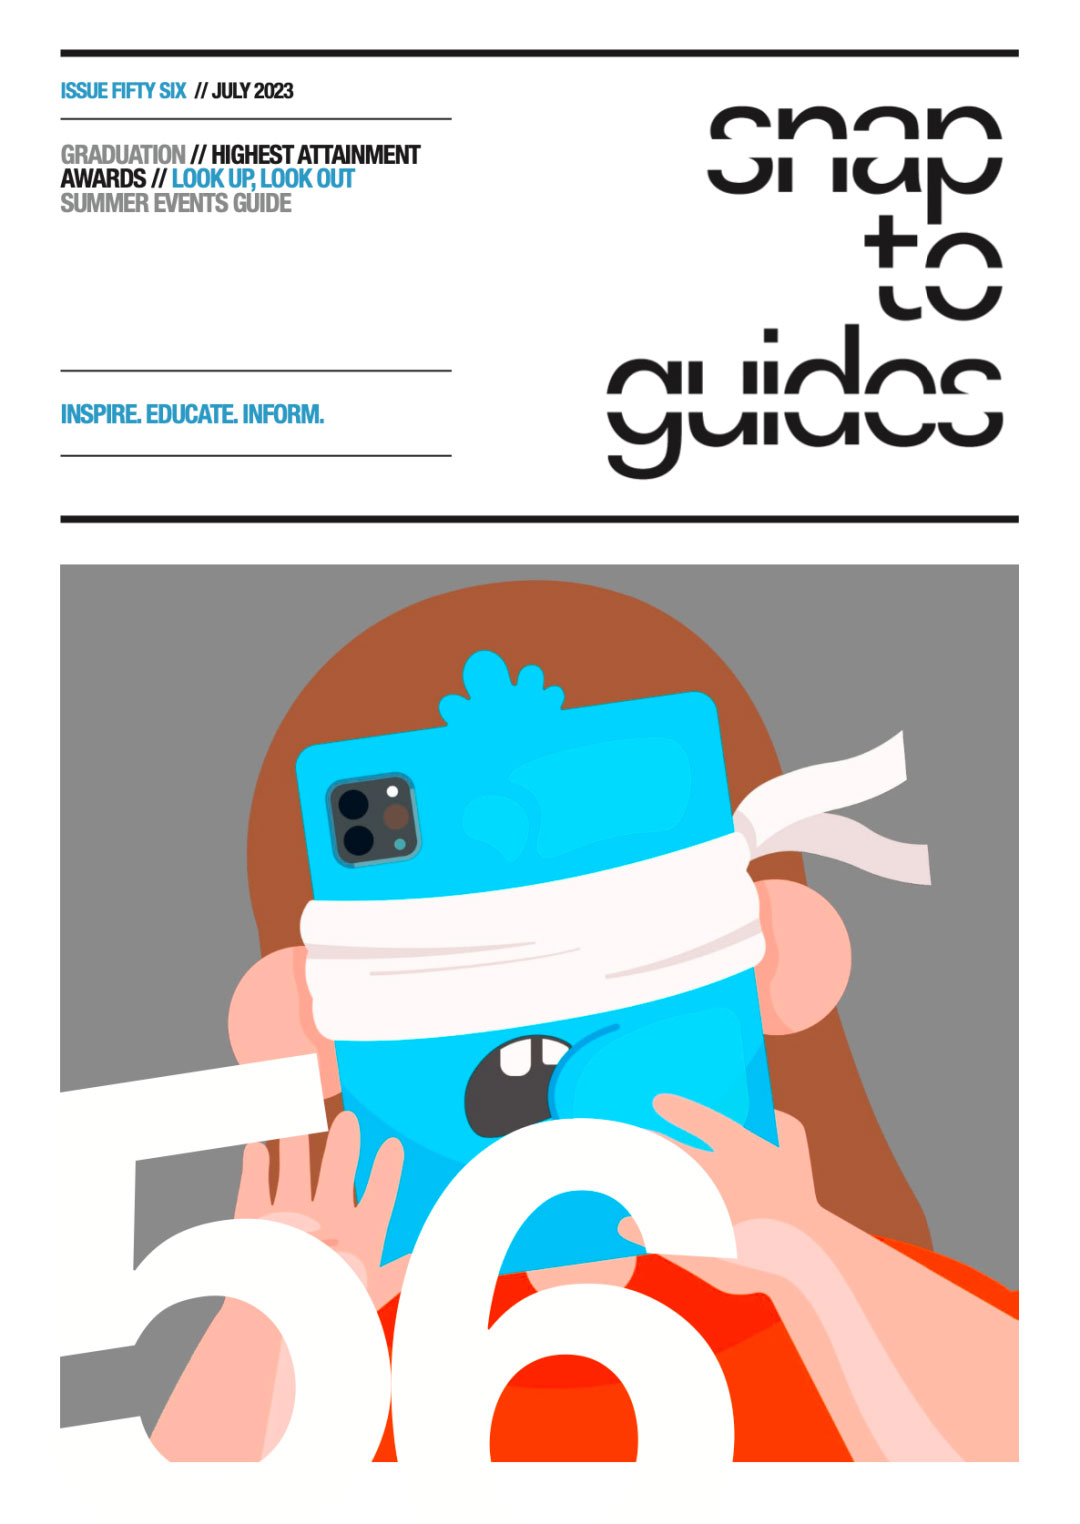 祝贺莱佛士学生作品登上英国考文垂《Snap to Guides》封面